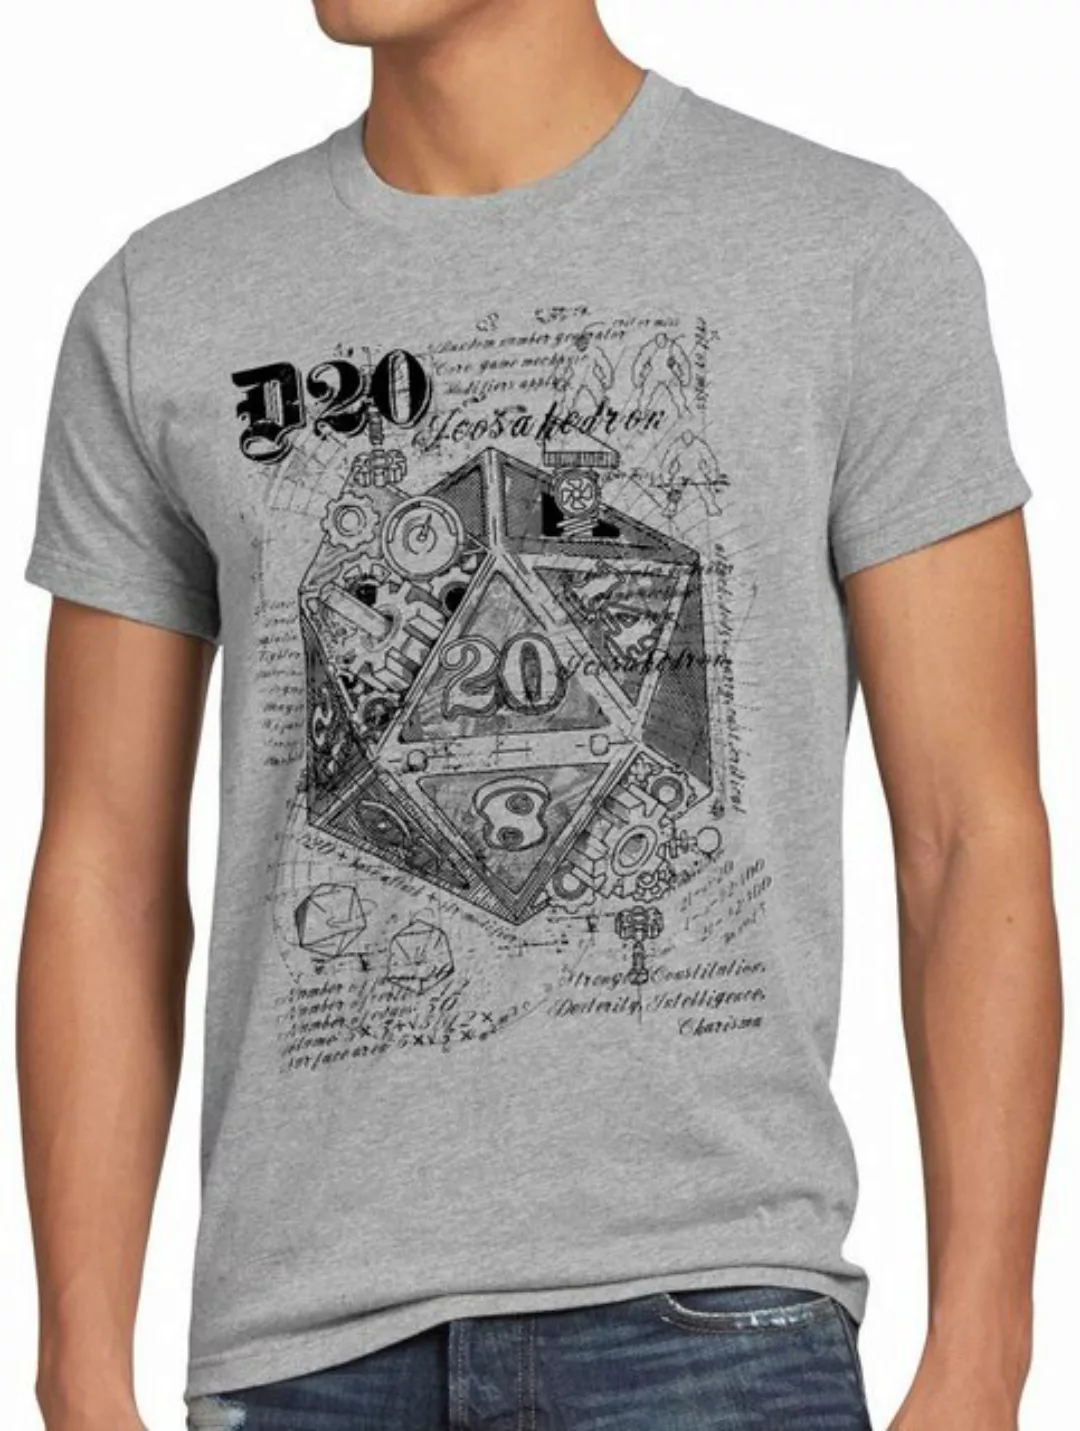 style3 Print-Shirt Herren T-Shirt D20 Da Vinci dragons würfel dungeon günstig online kaufen